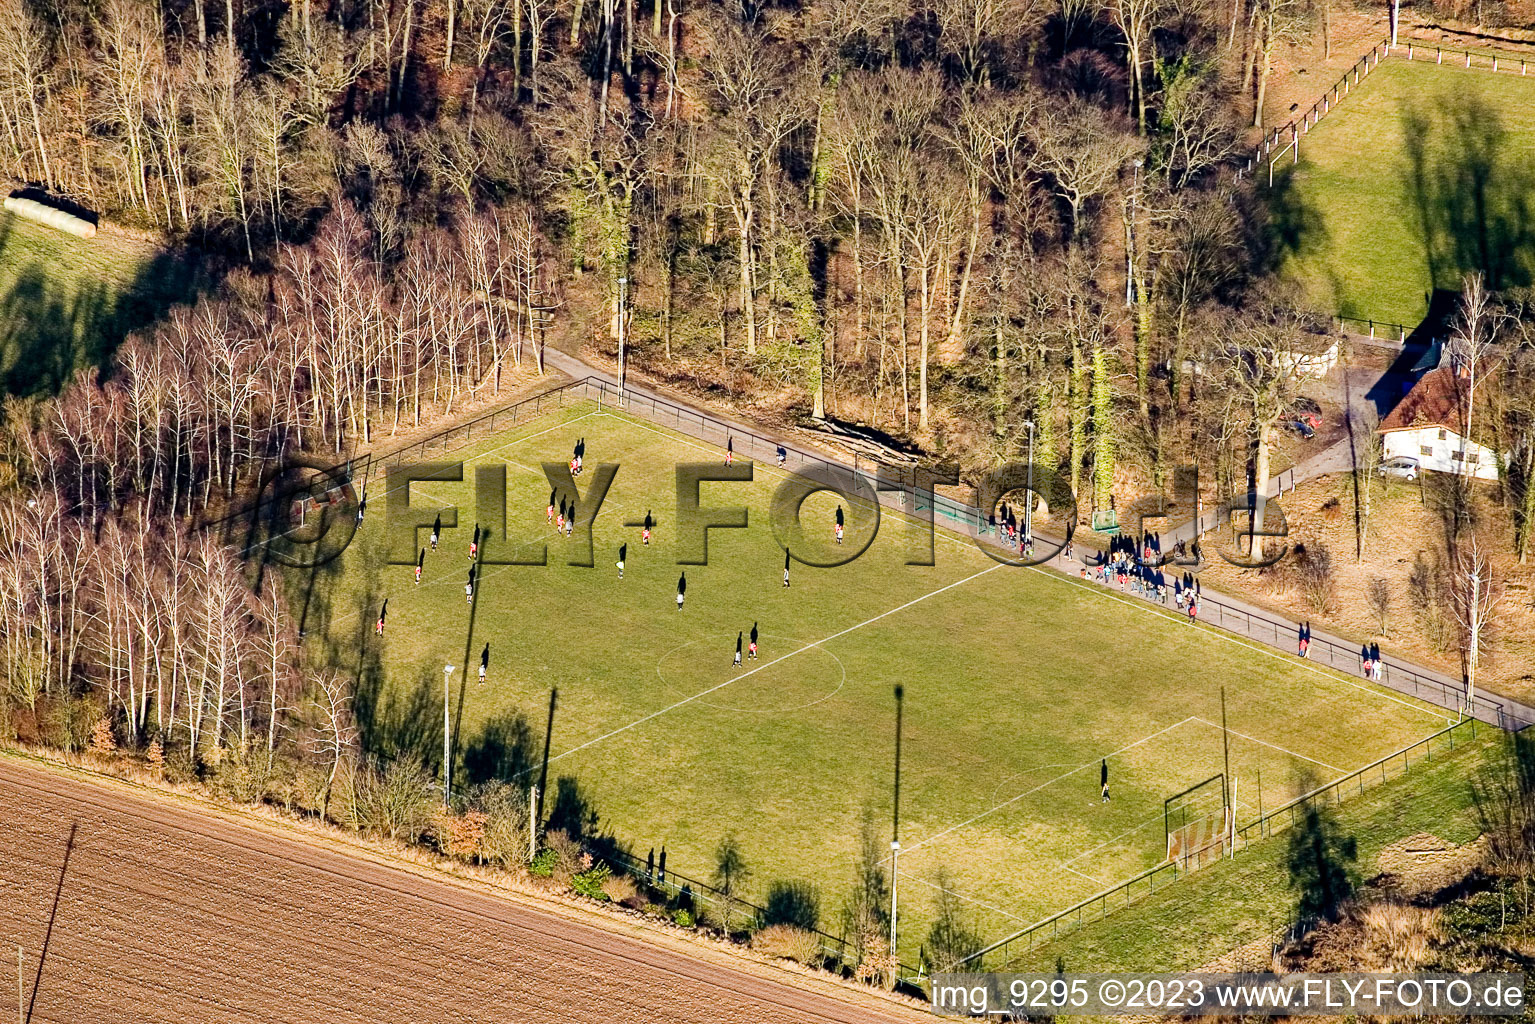 Terrains de sport à Steinweiler dans le département Rhénanie-Palatinat, Allemagne depuis l'avion